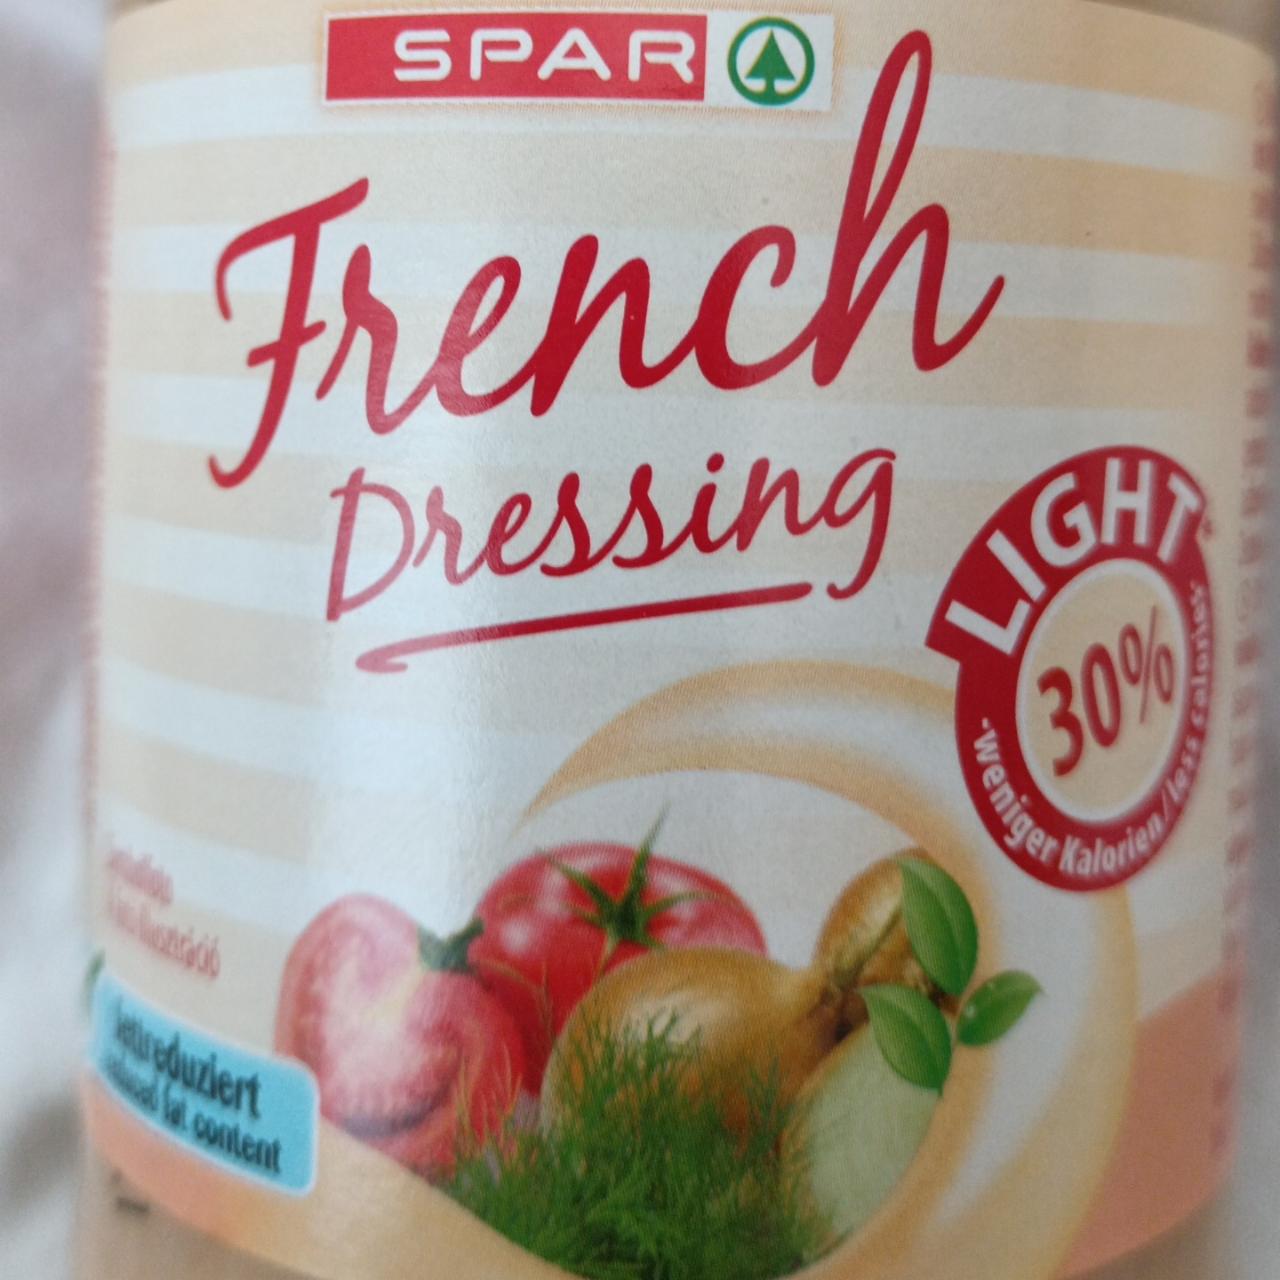 Képek - French dressing Spar